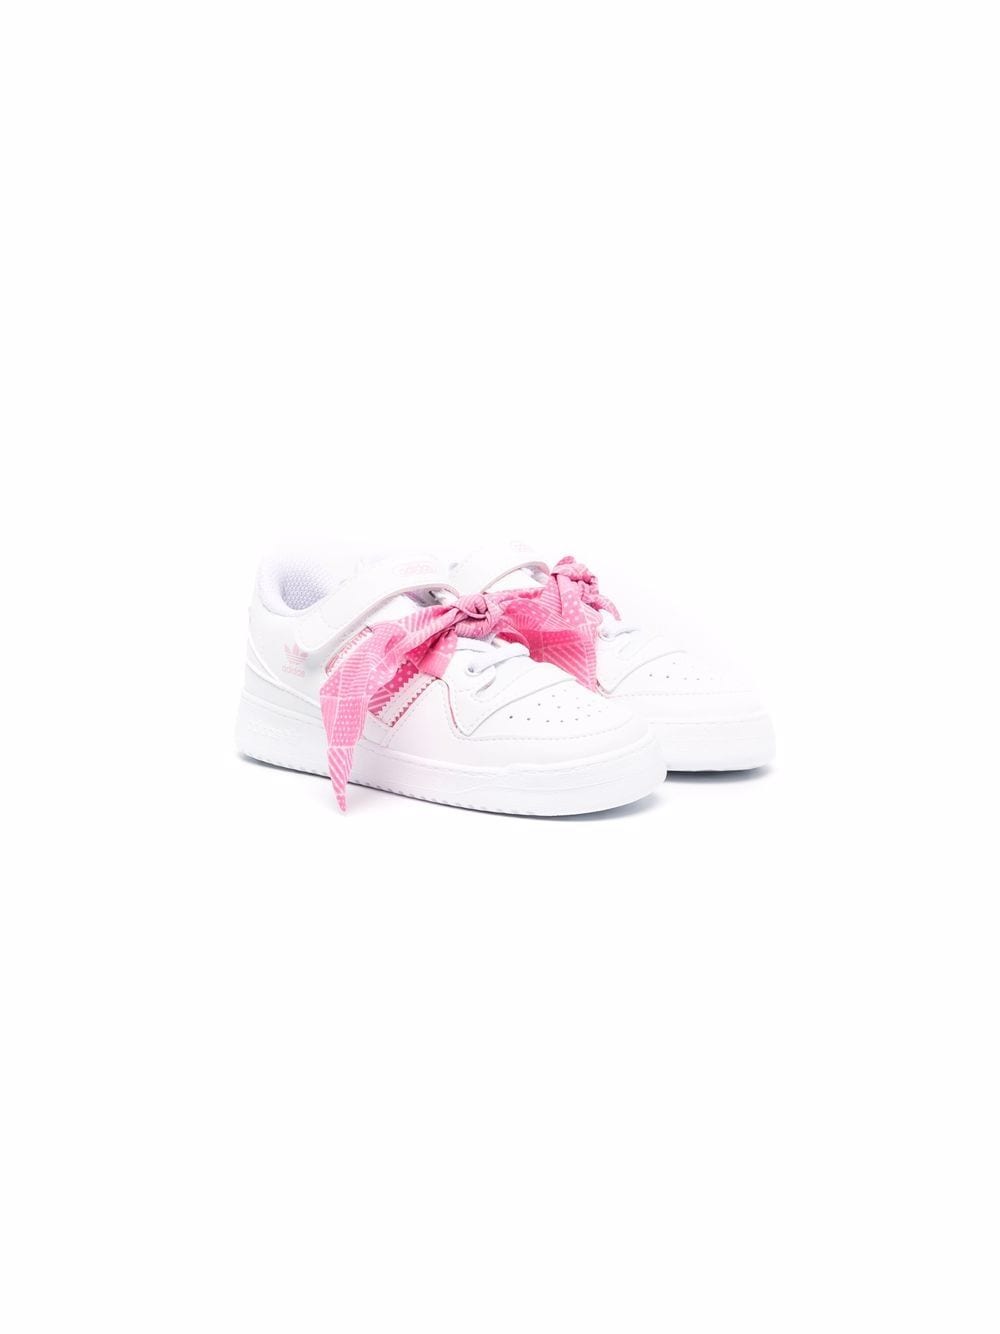 Adidas Kids Low Pink Ribbon Sneakers -